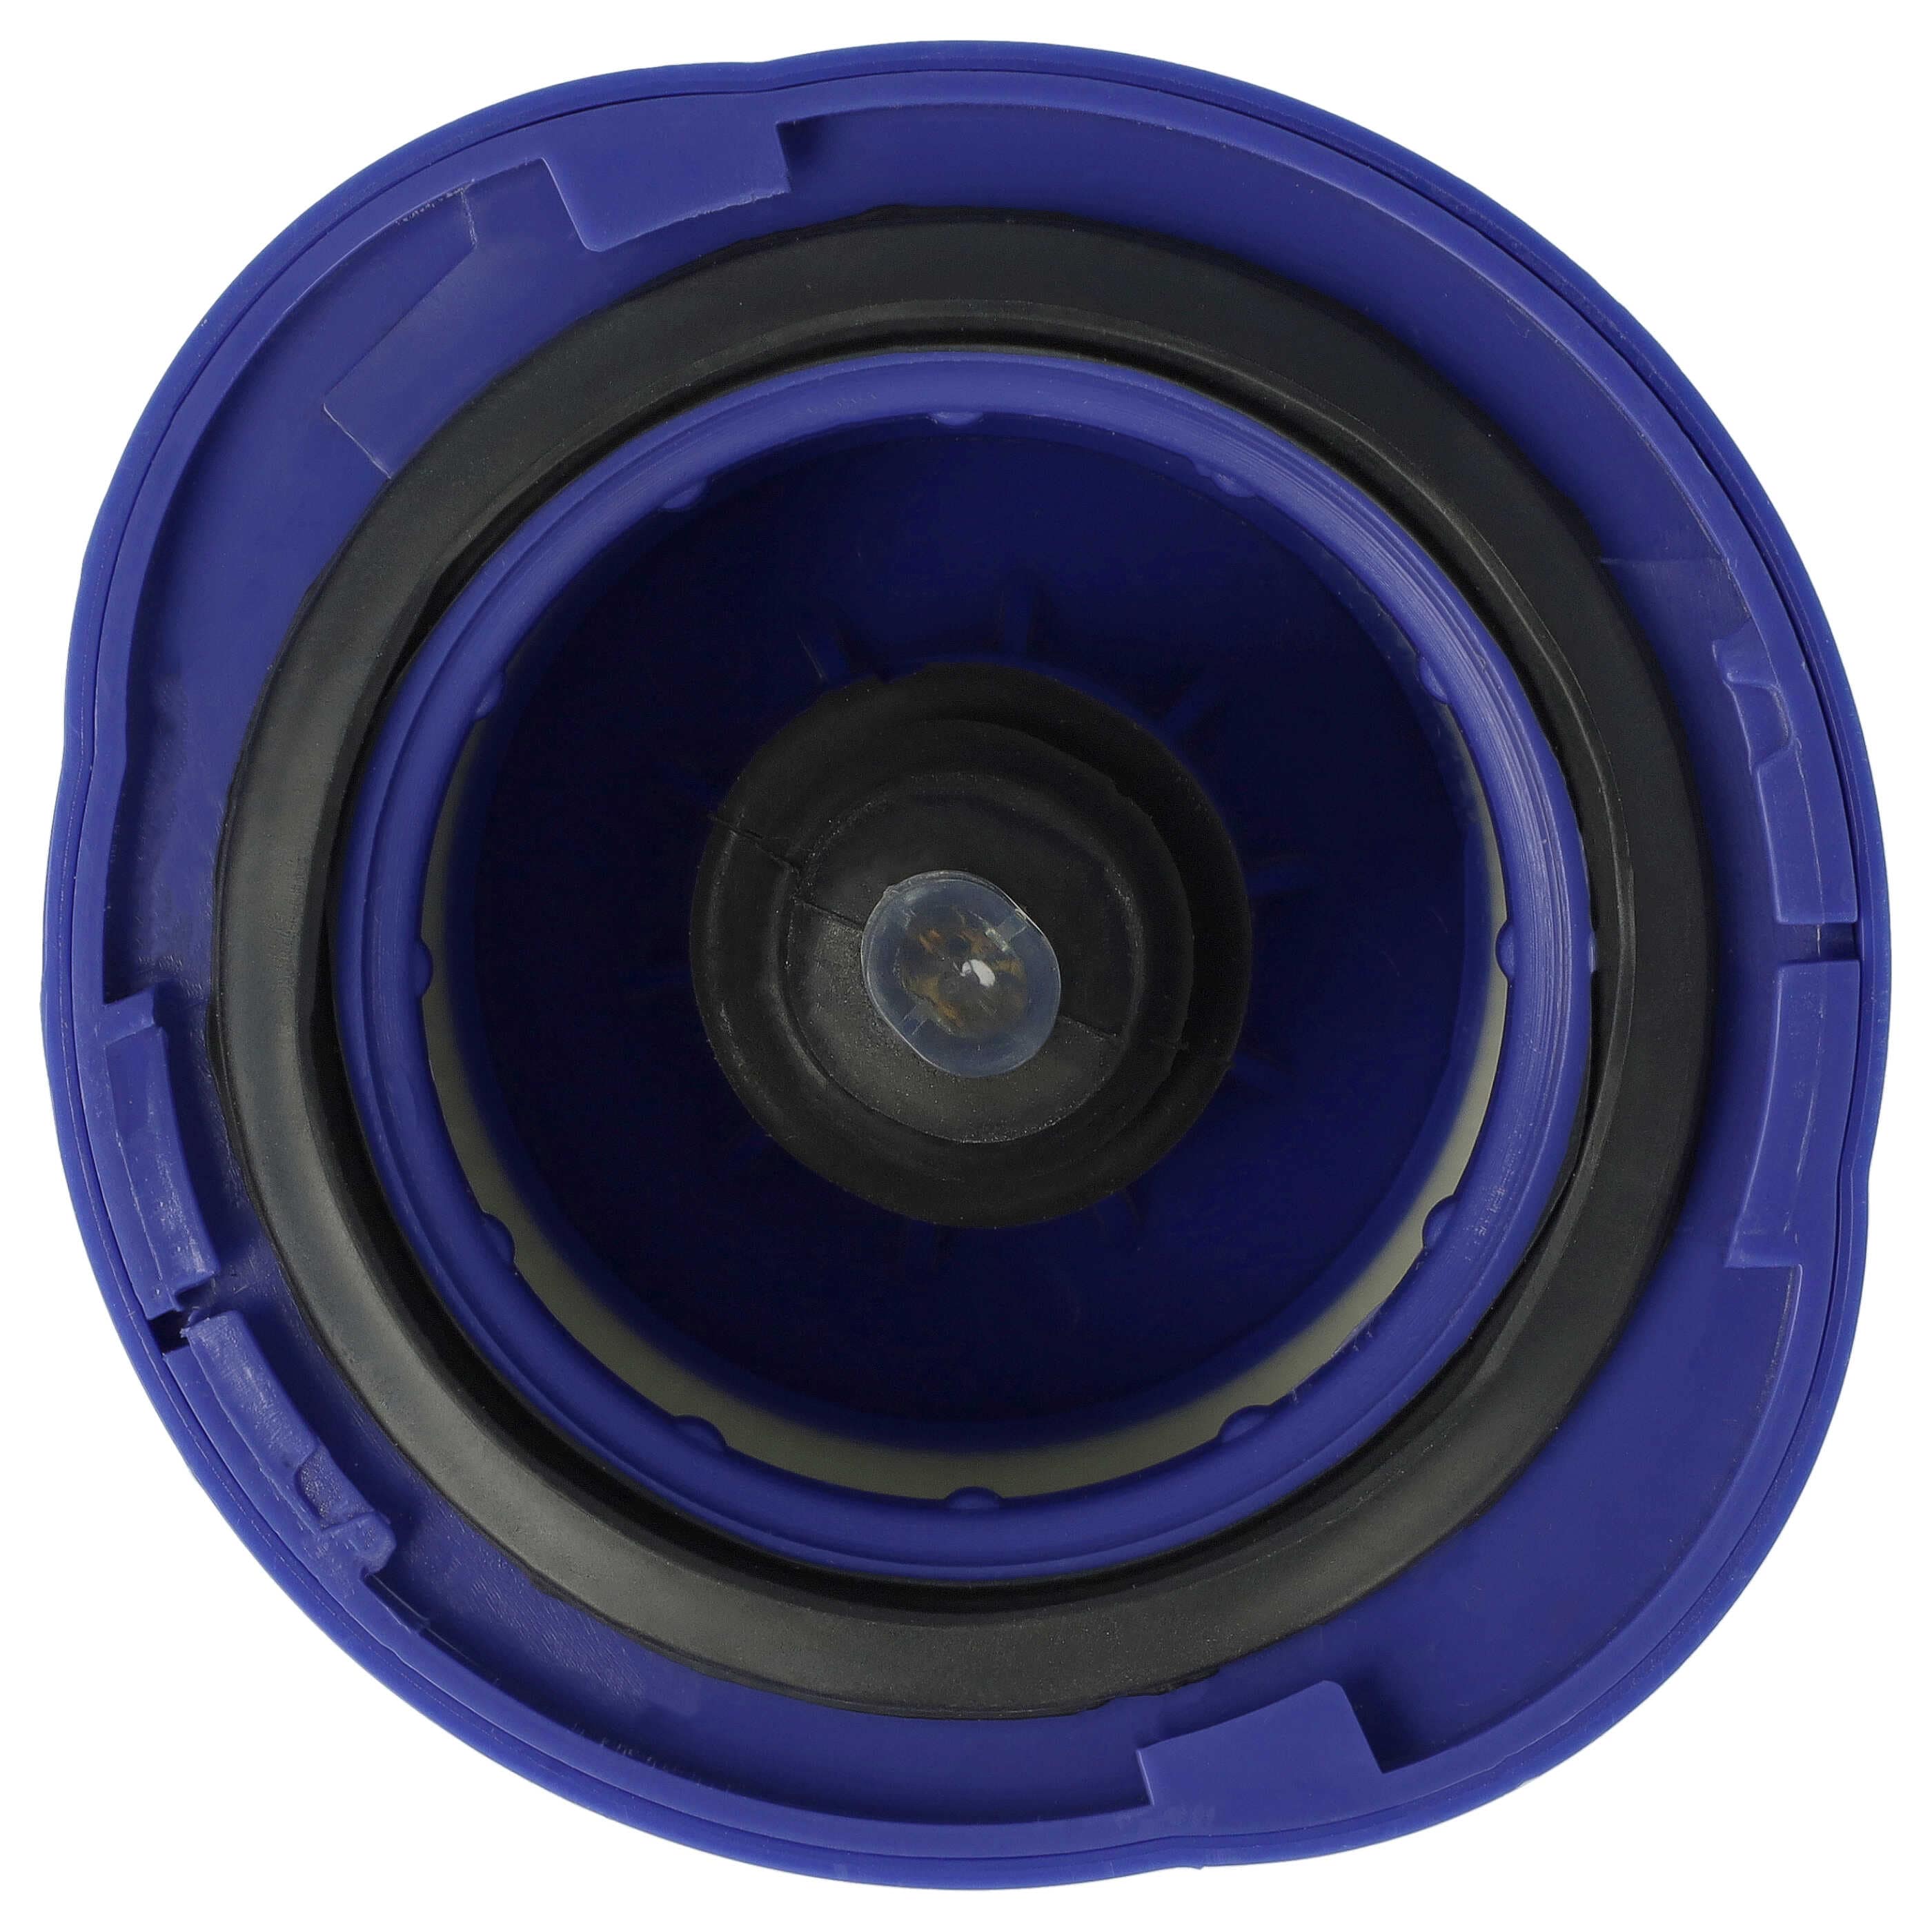 2x Filtro reemplaza Dyson 966741-01 para aspiradora - filtro salida del motor HEPA blanco / lila